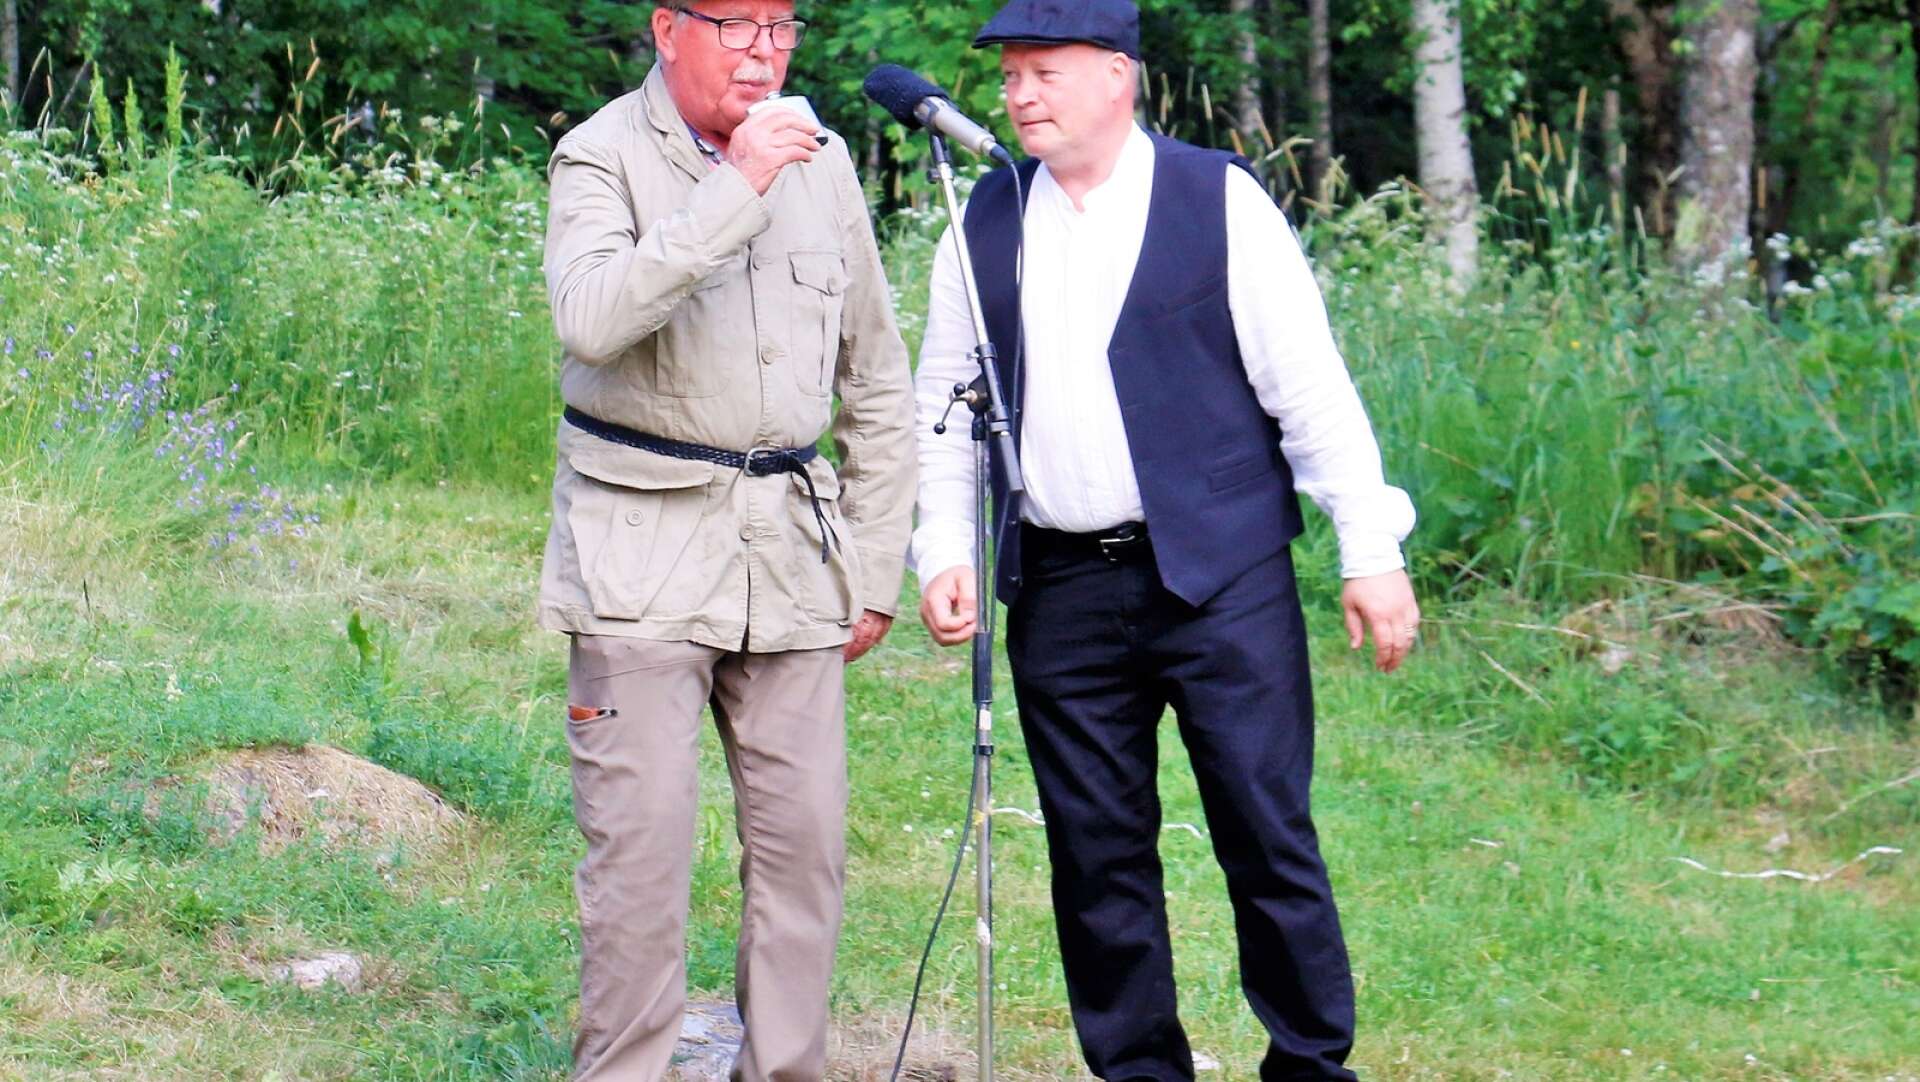 Lurendrejaren Herbert, spelad av Magnus Lindkvist, bjuder skogvaktaren på sprit.